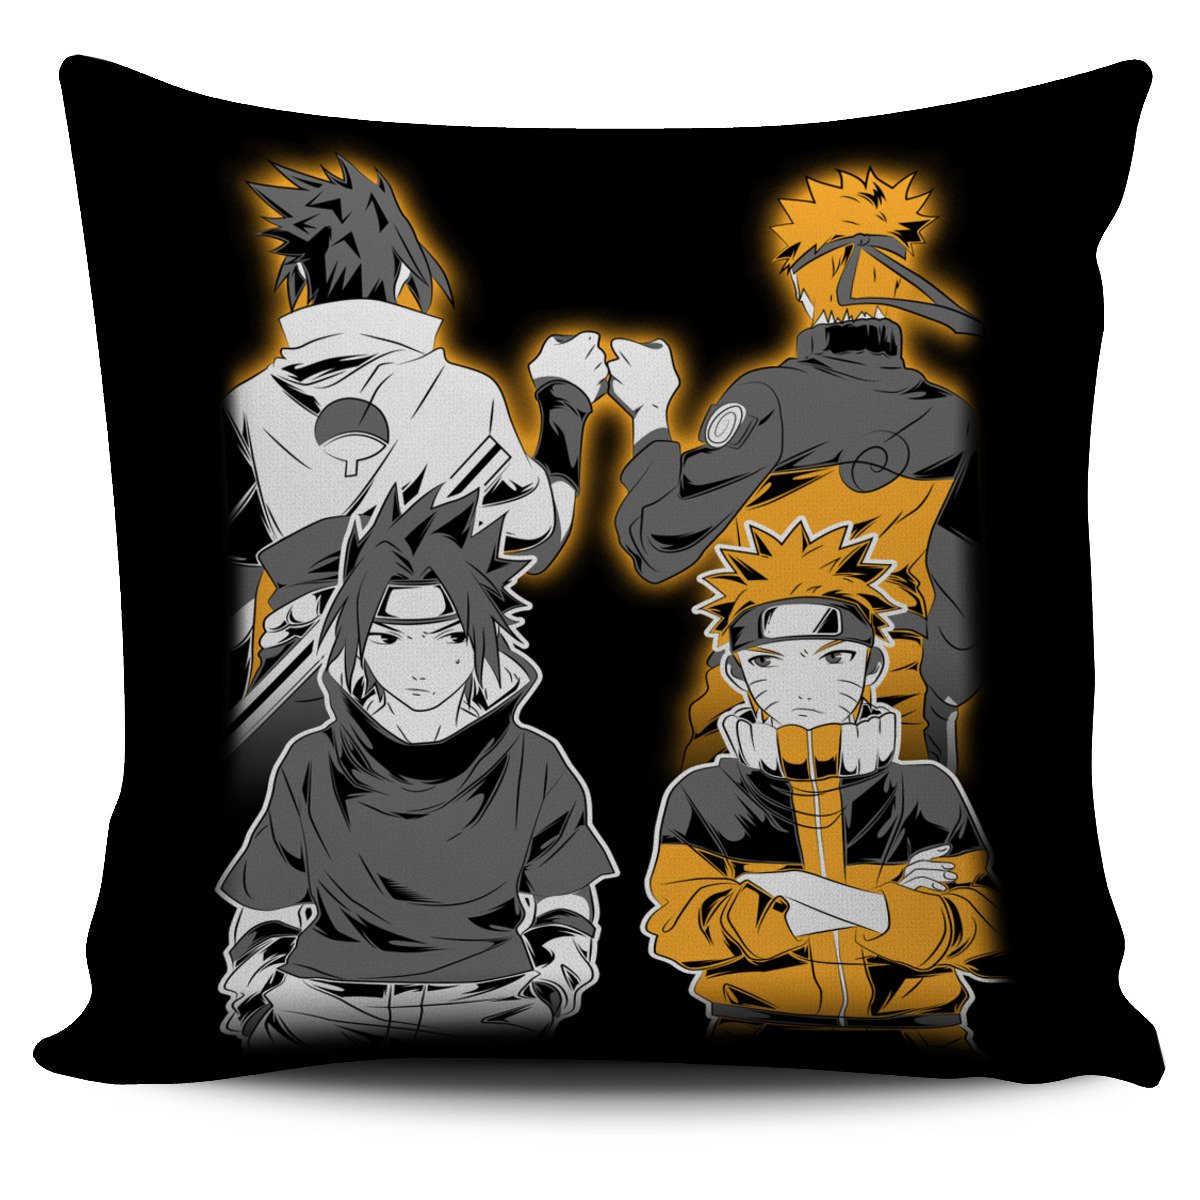 Naruto And Sasuke Pillow Cover